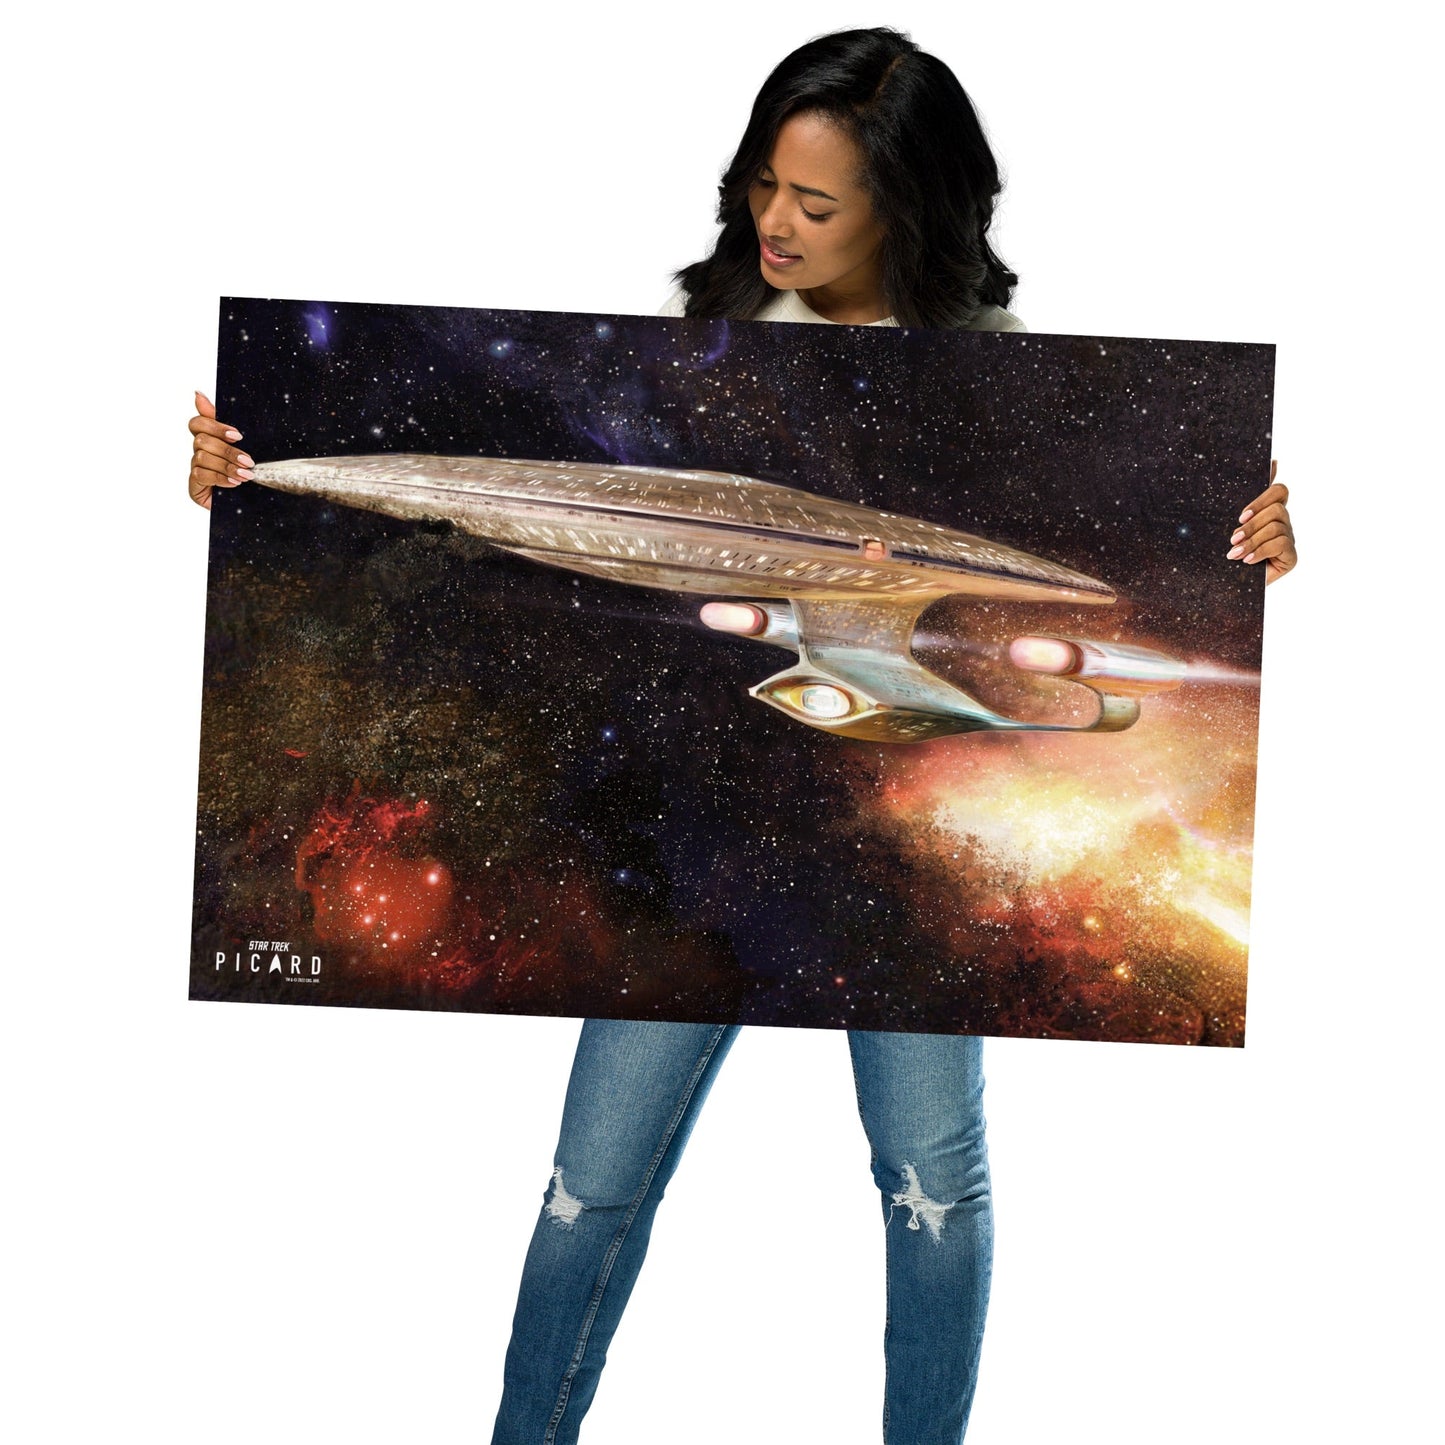 Star Trek: Picard U.S.S. Enterprise 1701 - D Ready Room Painting Premium Matte Paper Poster - Paramount Shop